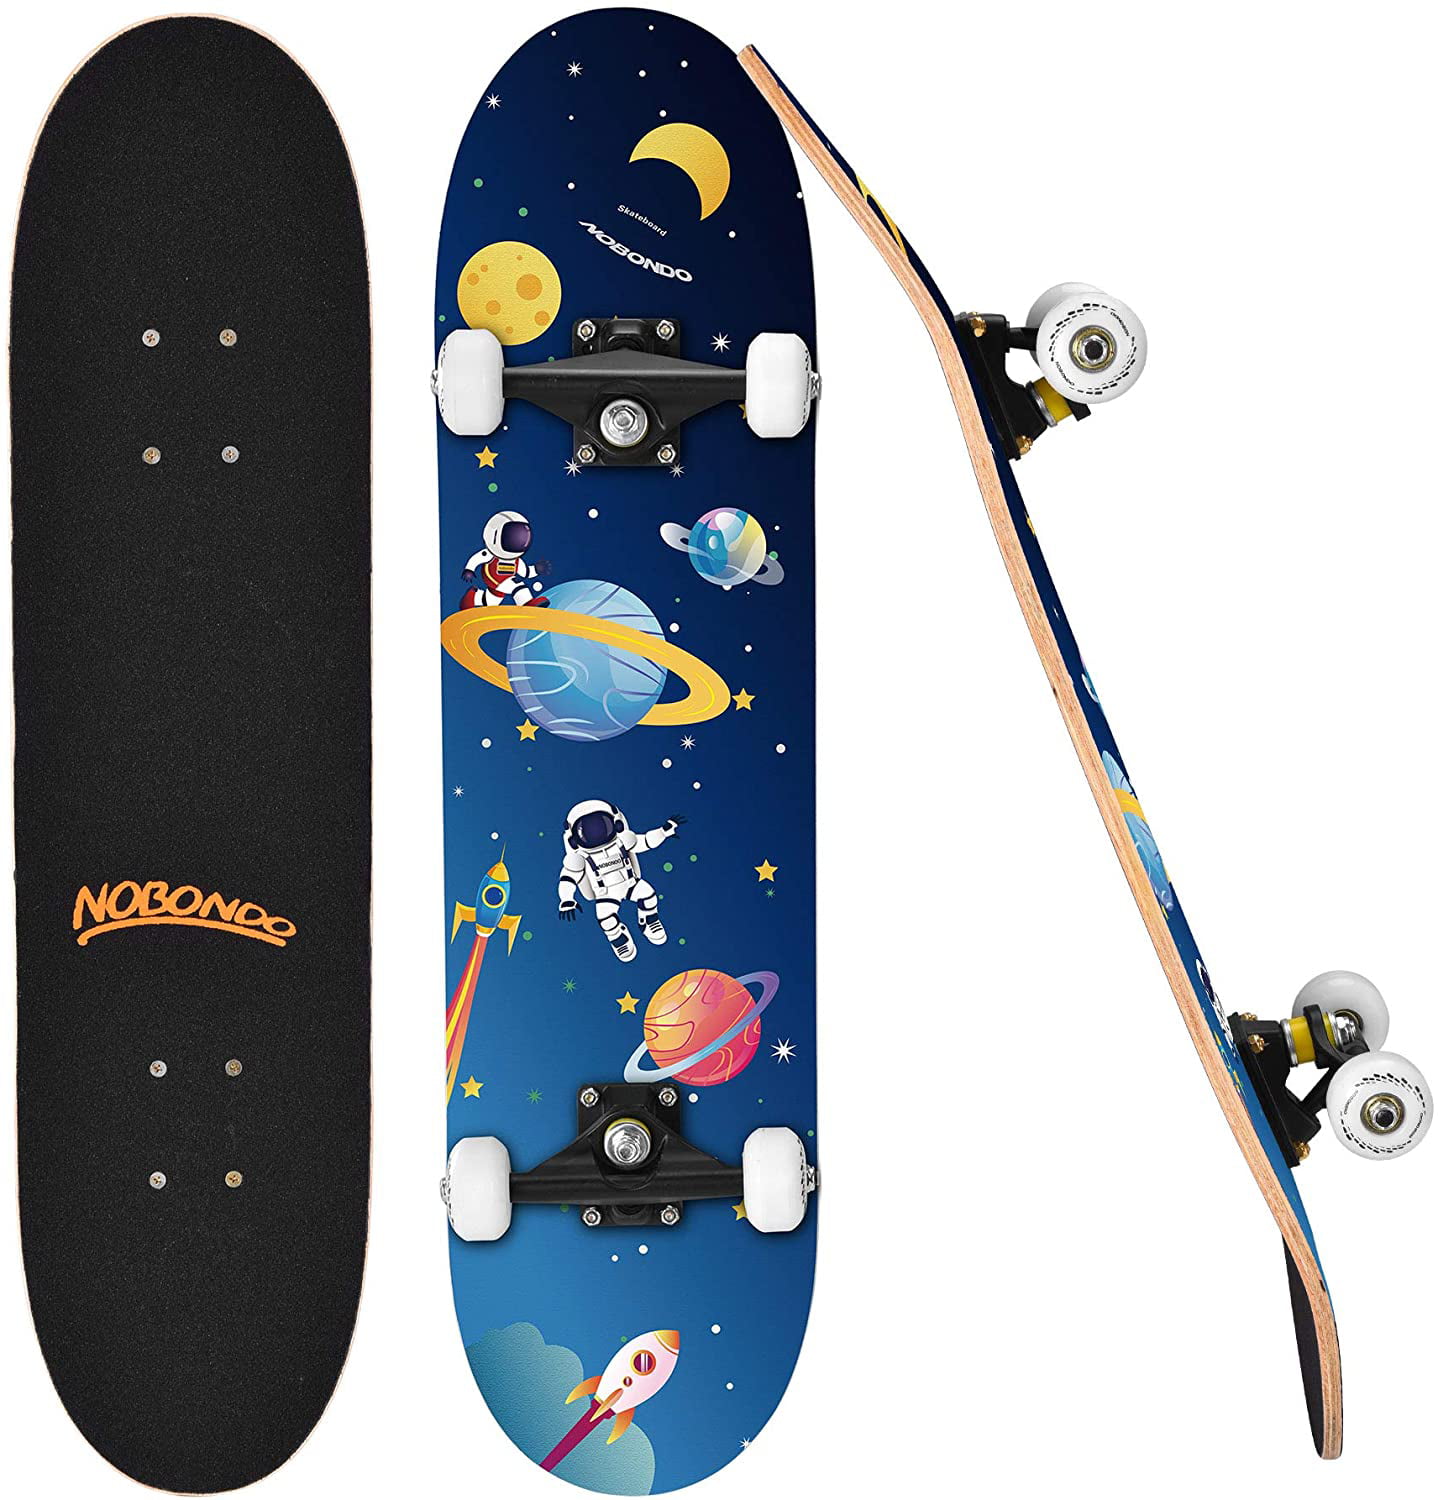 31" x 8" Skateboard Adult & Kids Skateboard,Beginners Double Kick Maple Fun Gift 